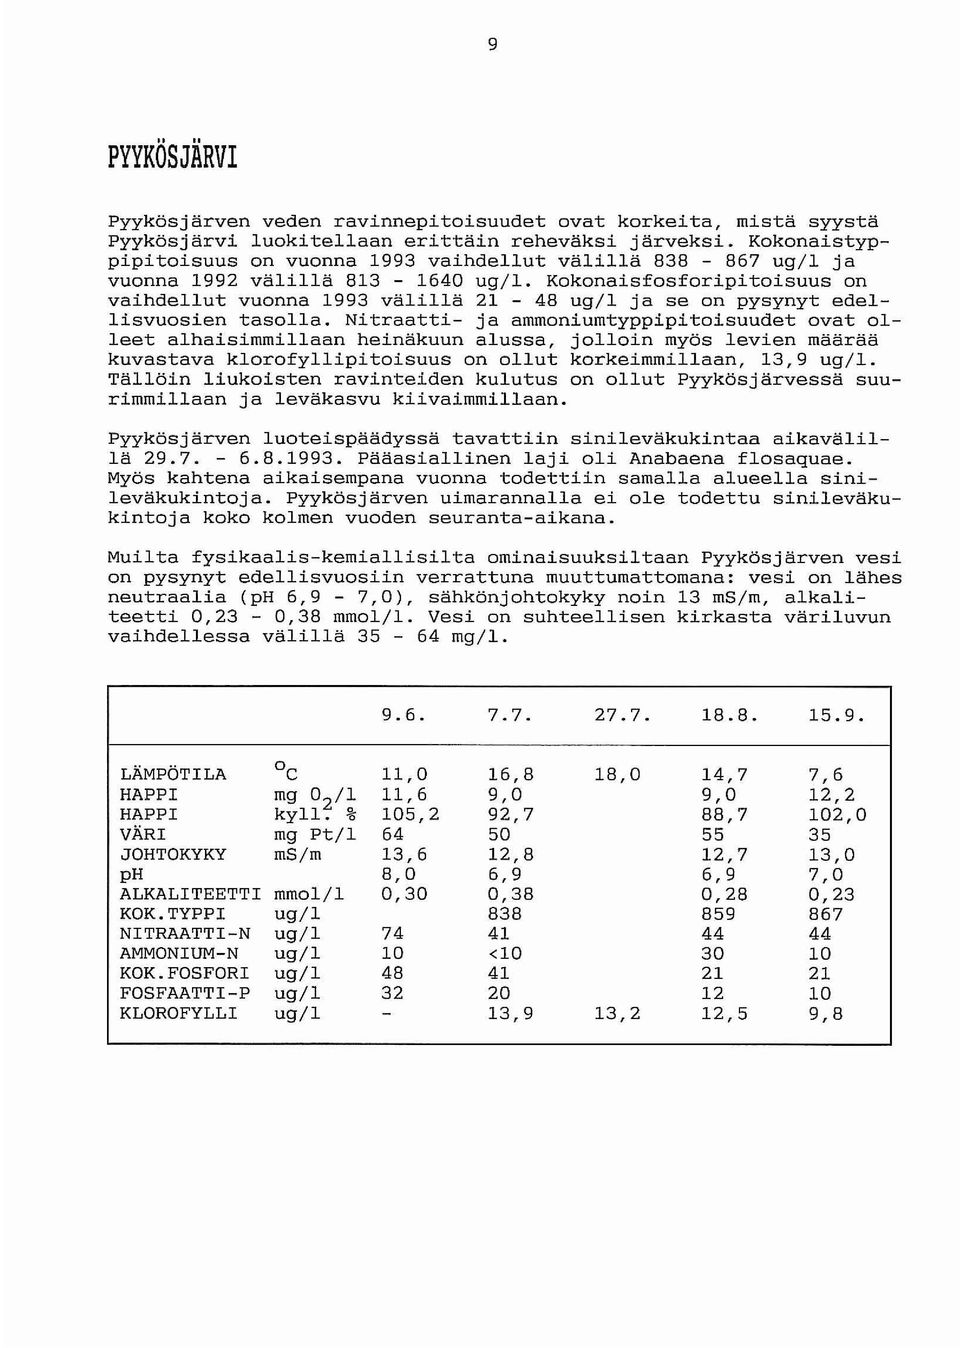 Kokonaisfosforipitoisuus on vaihdellut vuonna 1993 välillä 21-48 ug/l ja se on pysynyt edellisvuosien tasolla.